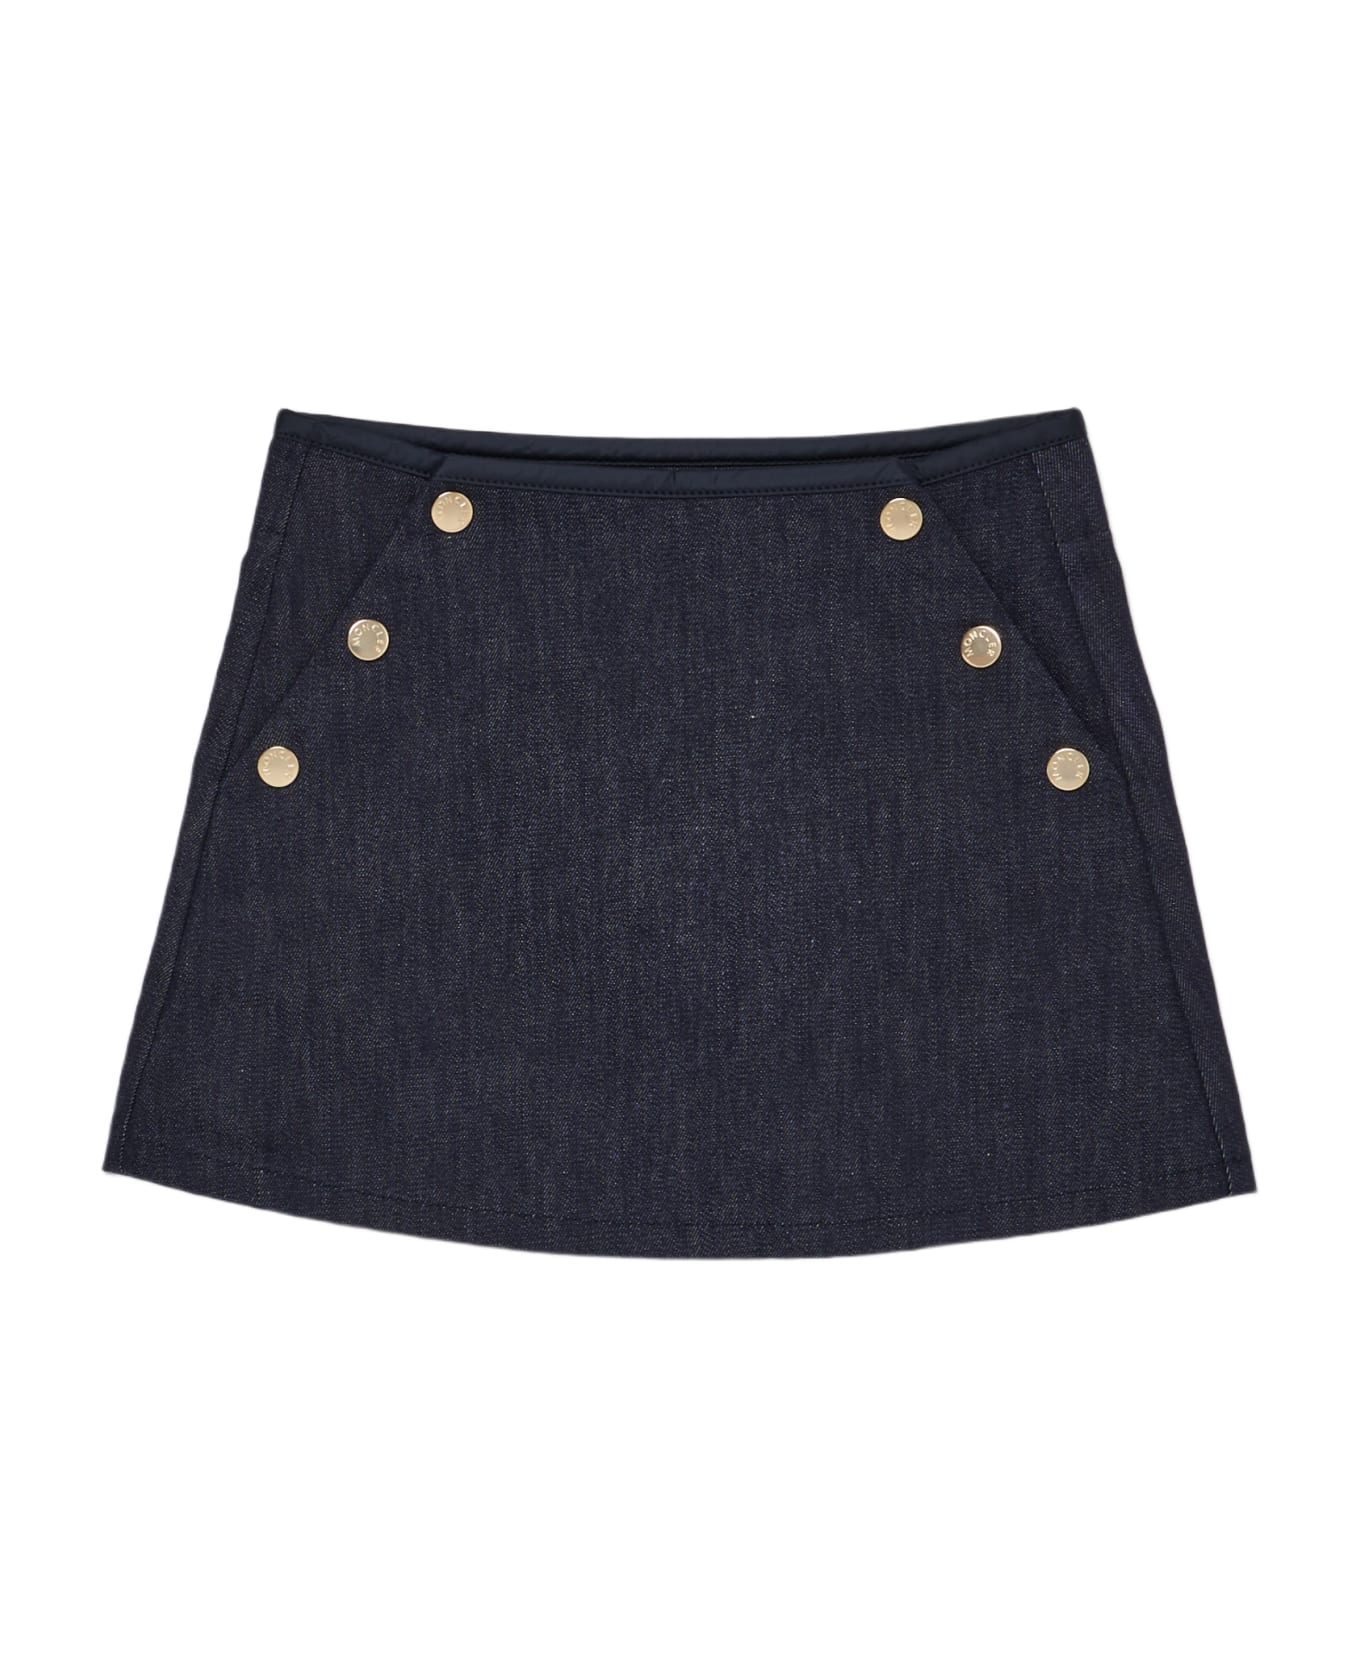 Moncler Skirt Skirt - DENIM SCURO